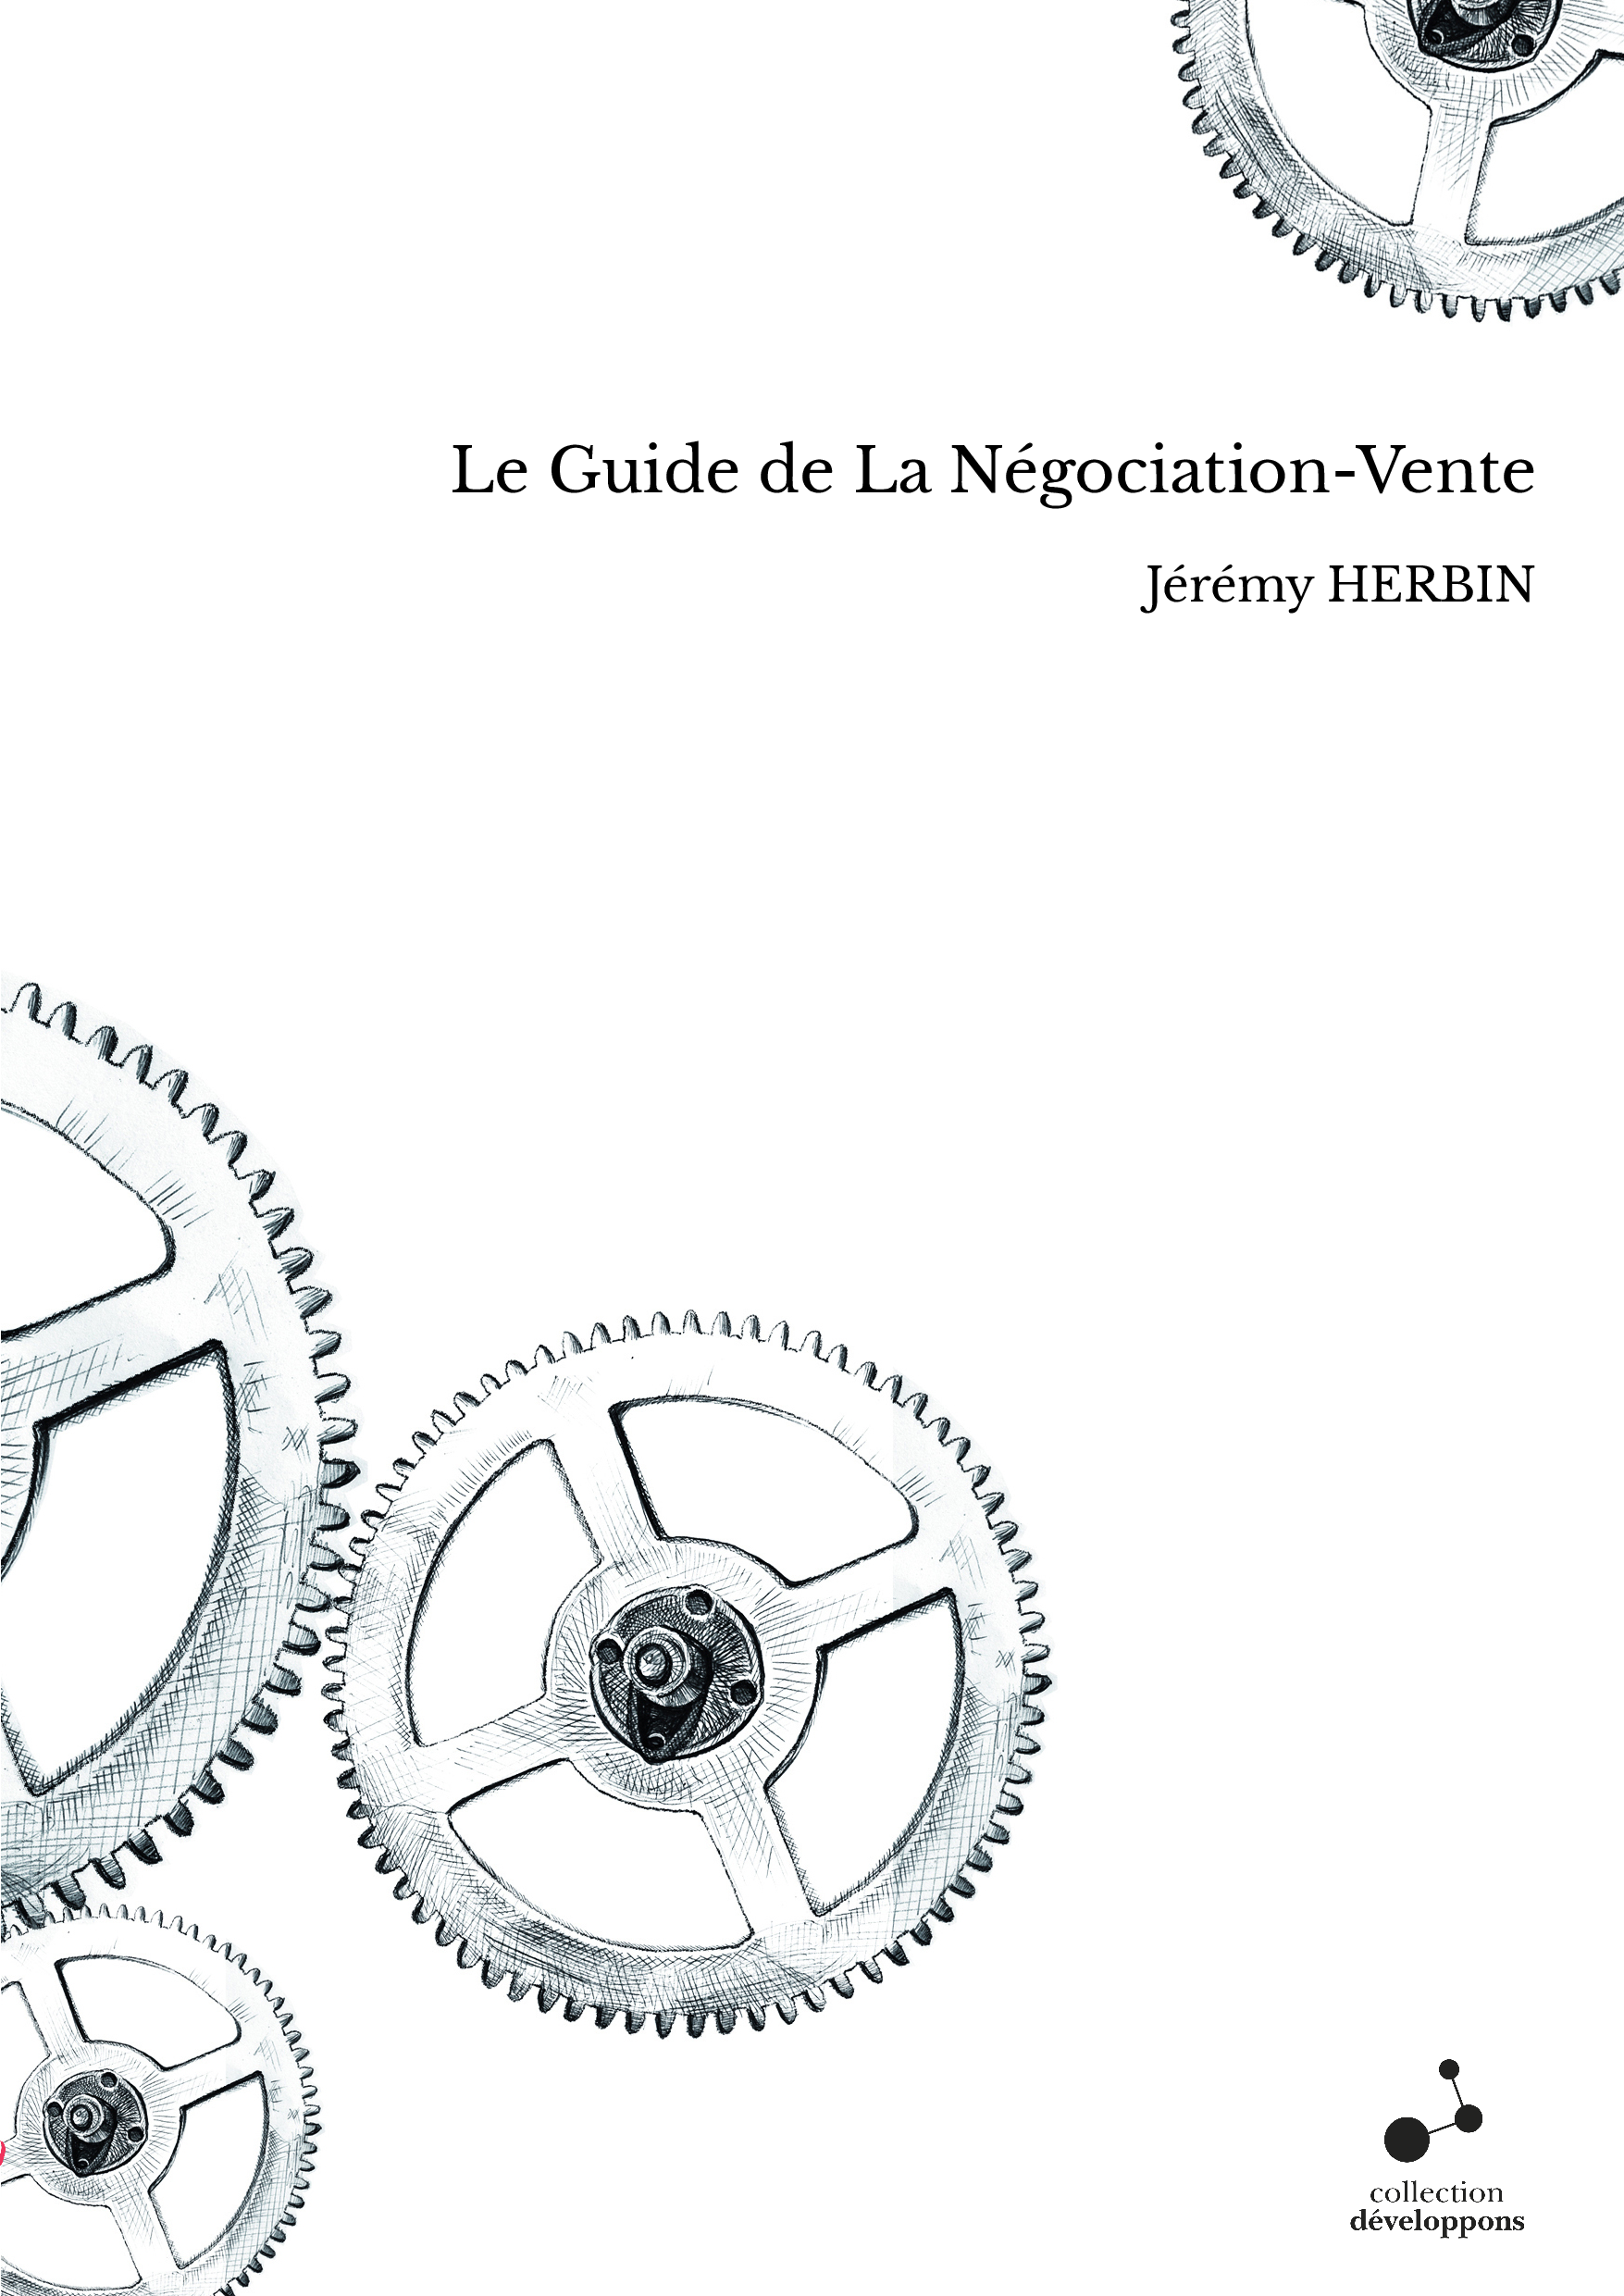 Le Guide de La Négociation-Vente